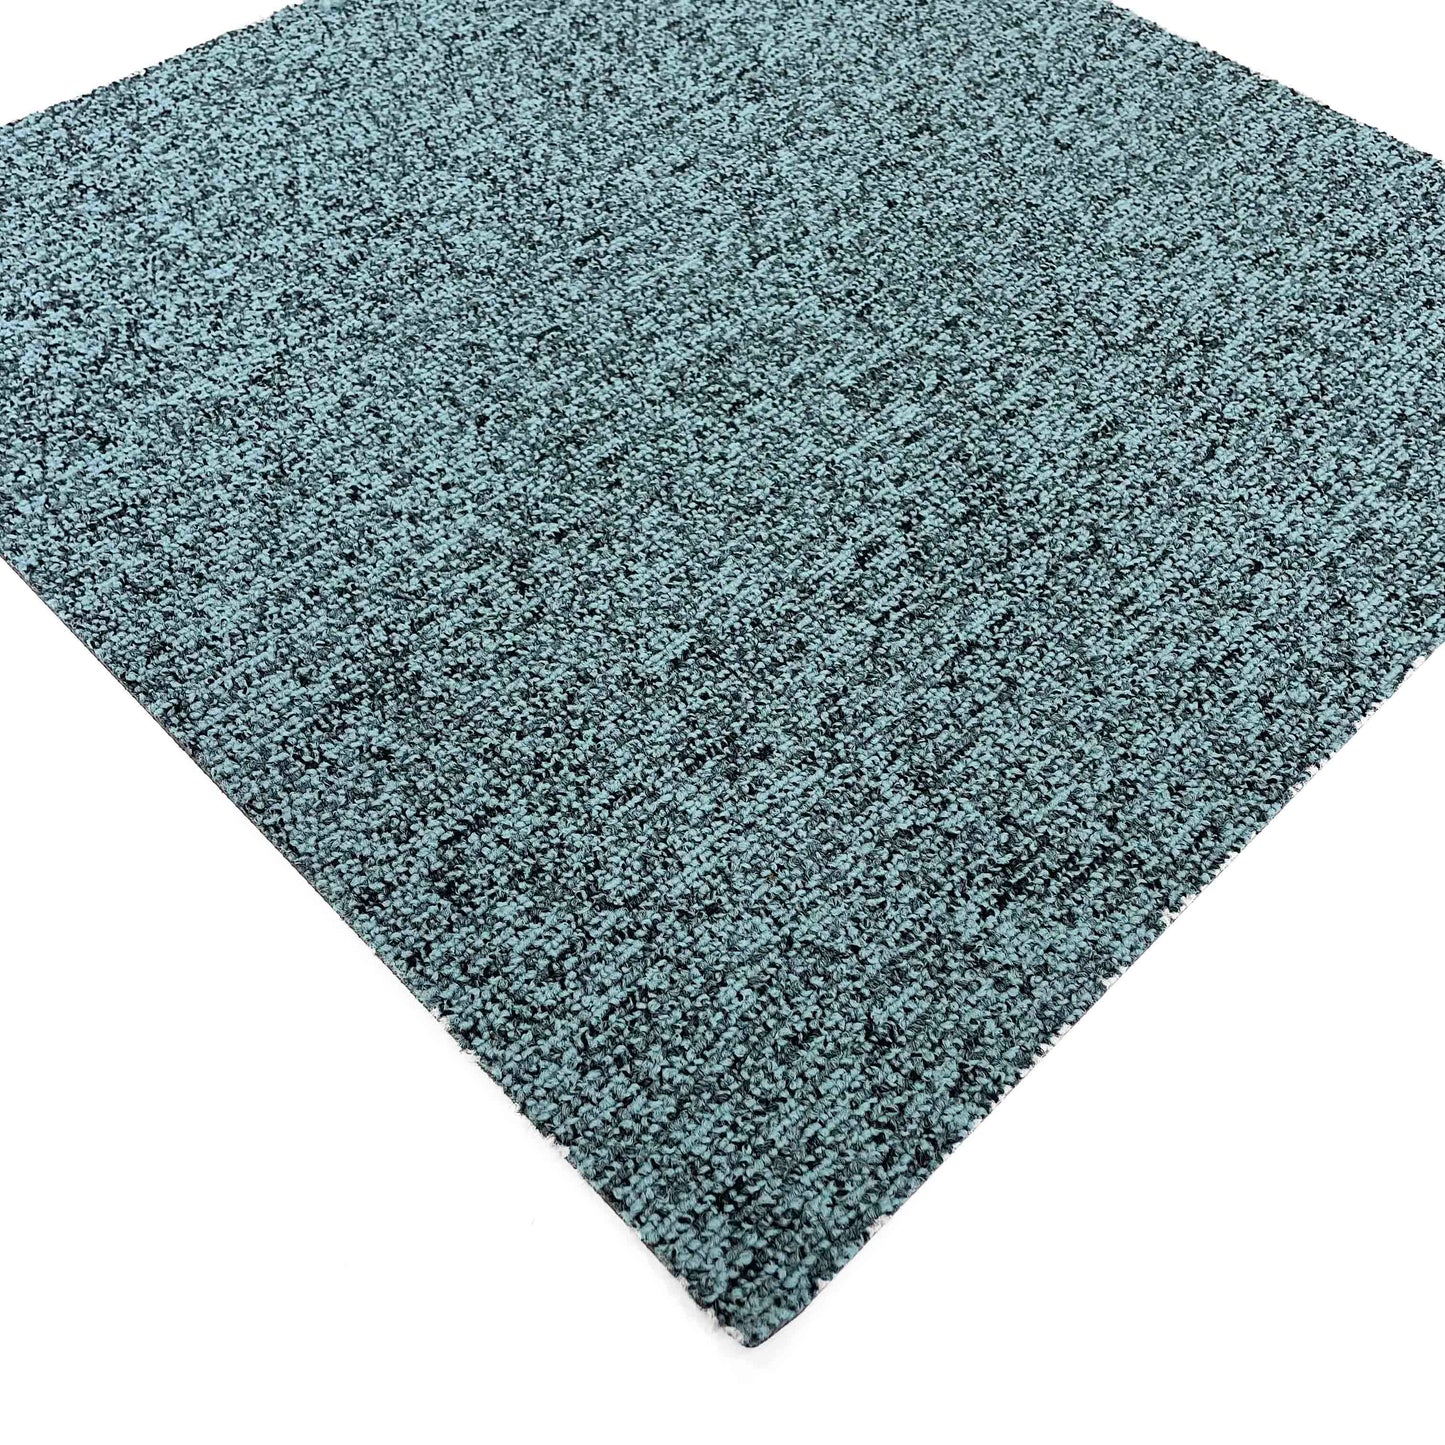 Duck Egg Blue Speckled Carpet Tile